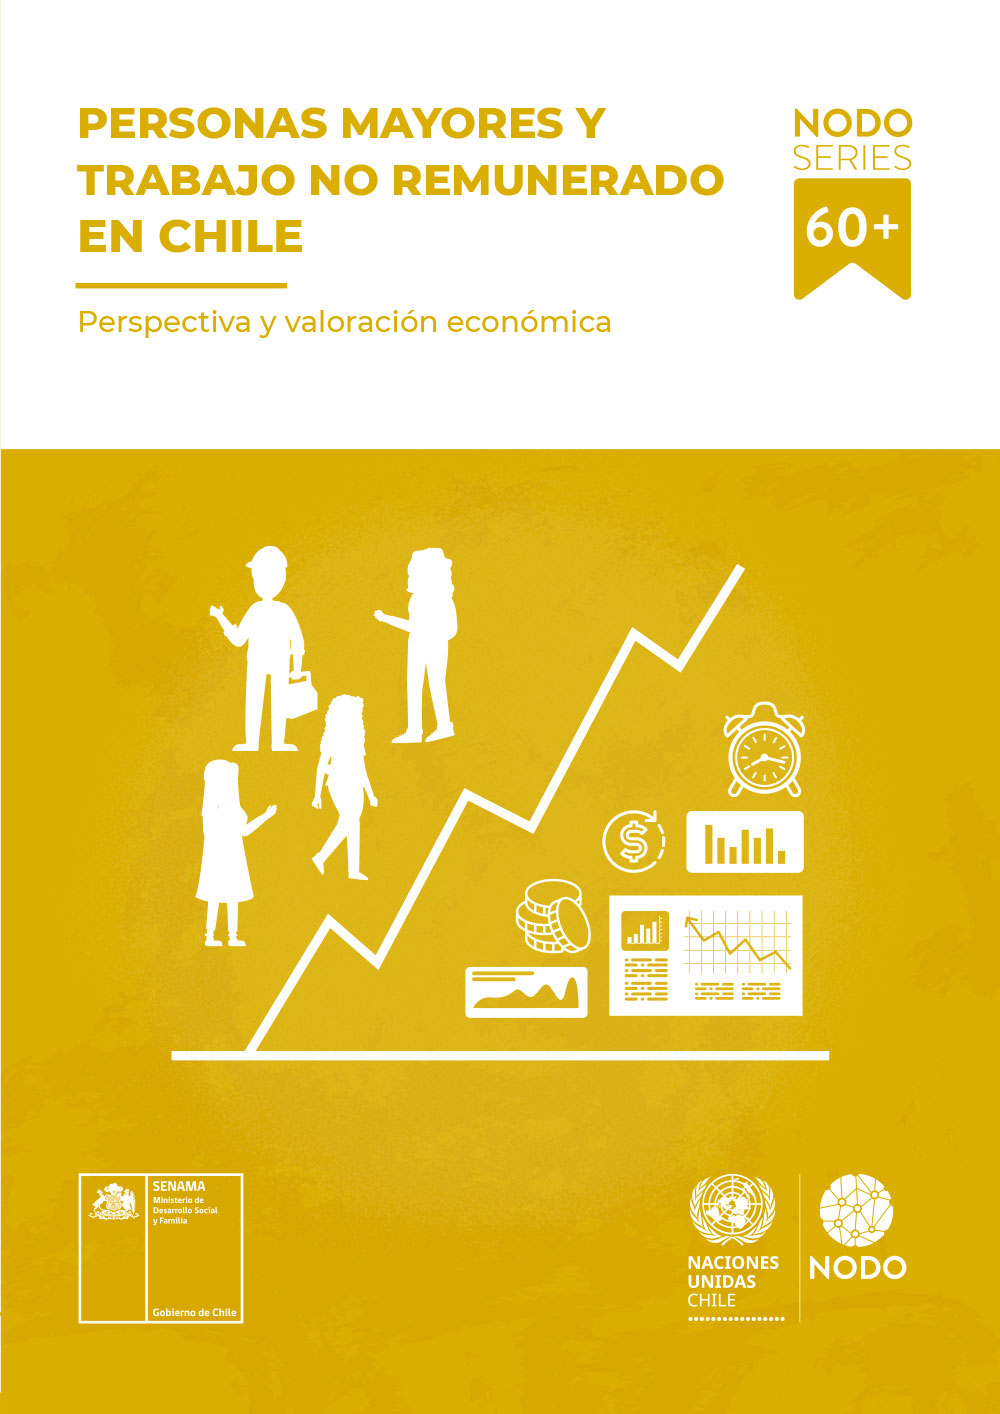 Personas-mayores-y-trabajo-no-remunerado-en-Chile-NODO-Series-60